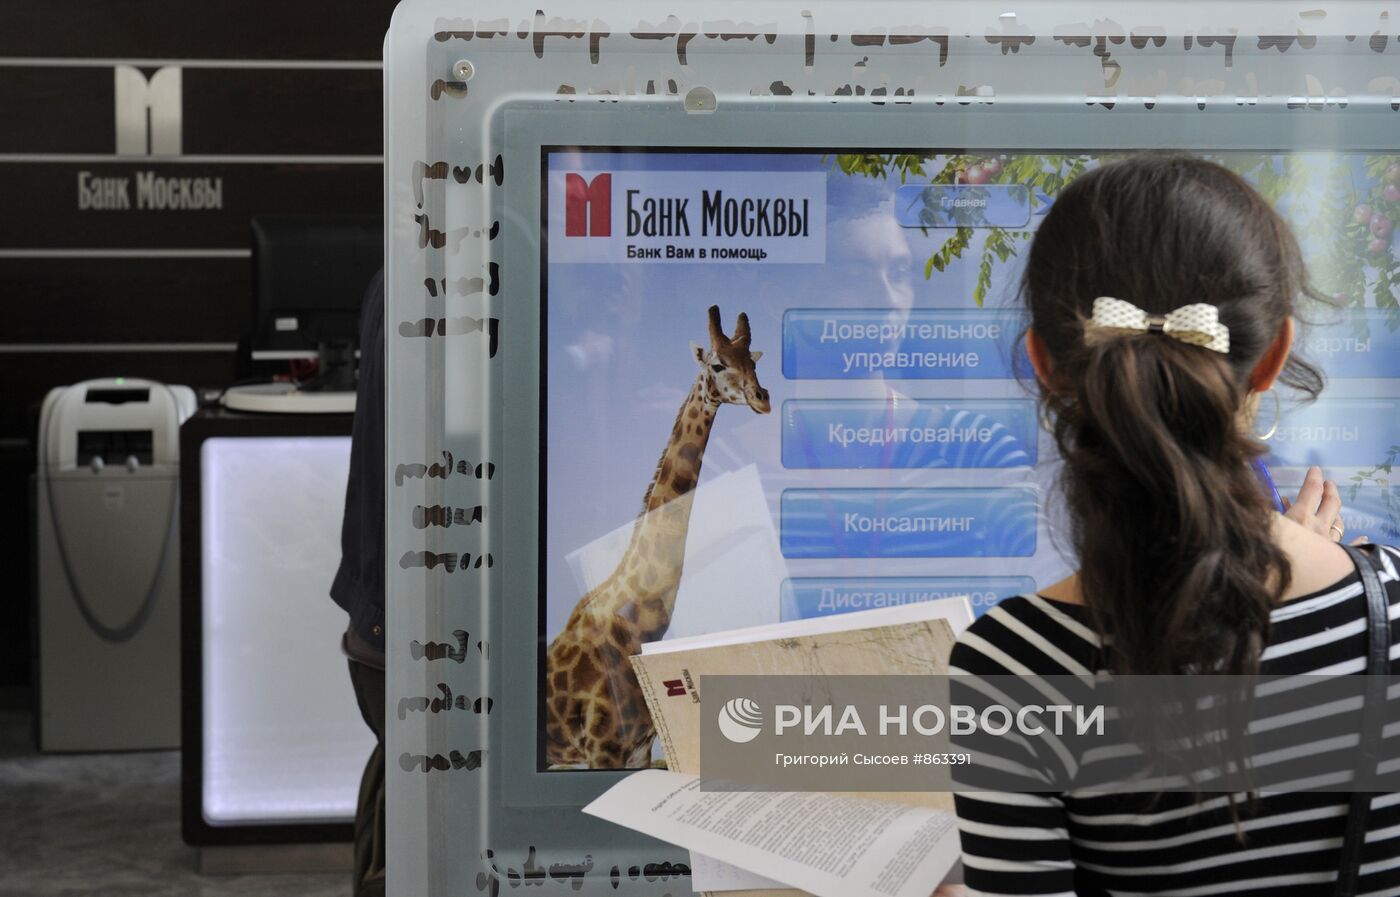 Тест-драйв нового офиса "Банка Москвы" "Digital Office"